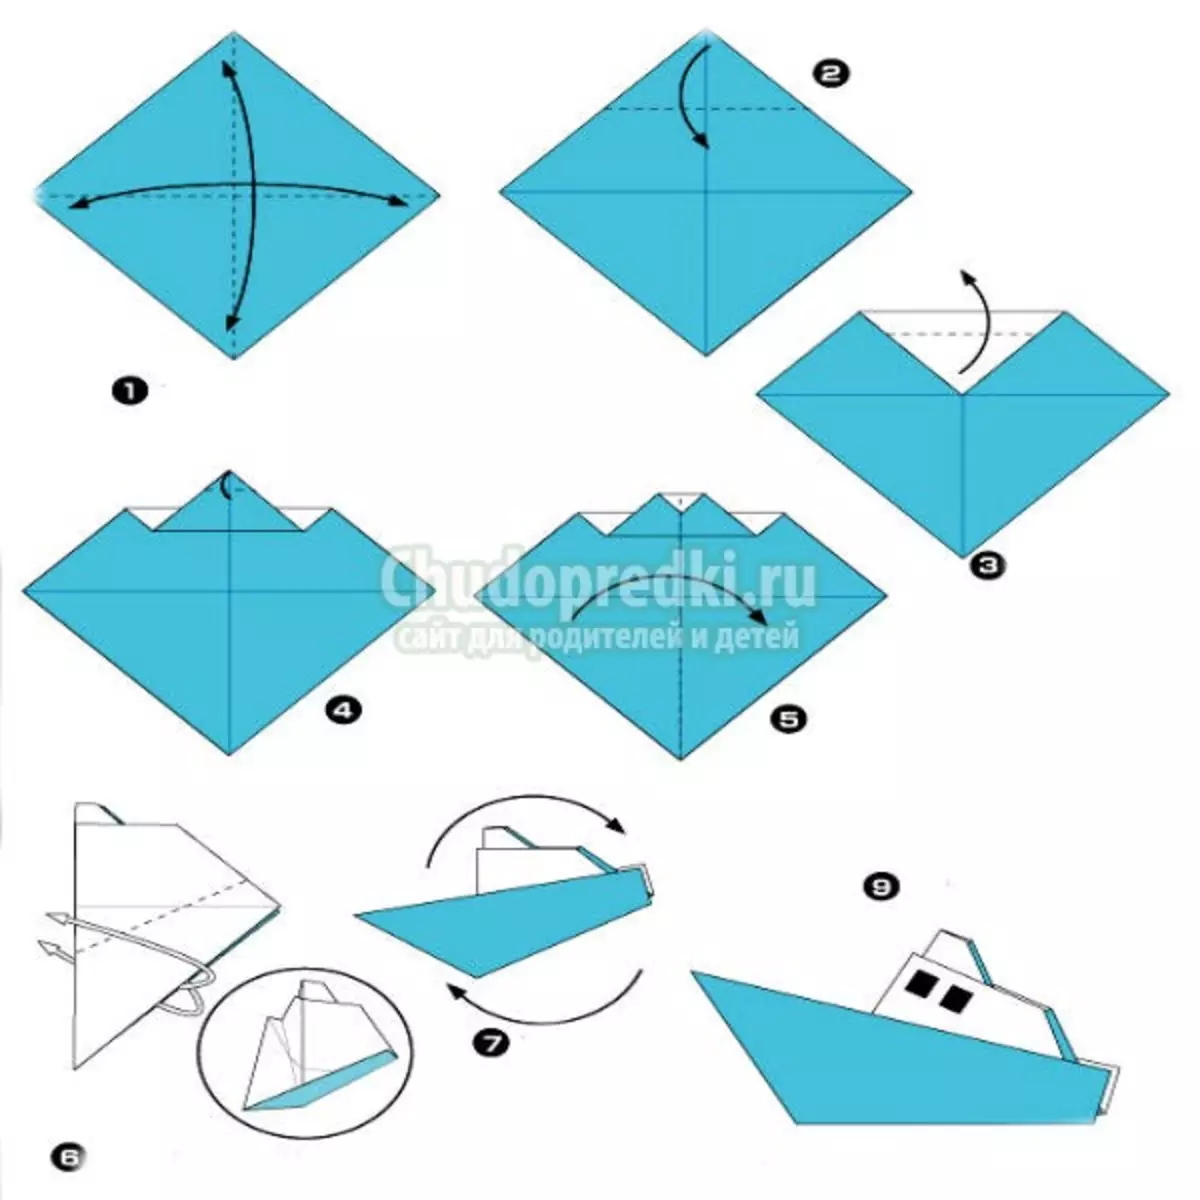 Πώς να φτιάξετε ένα σκάφος με σκάφος: βήμα-βήμα origami οδηγίες με φωτογραφίες και βίντεο